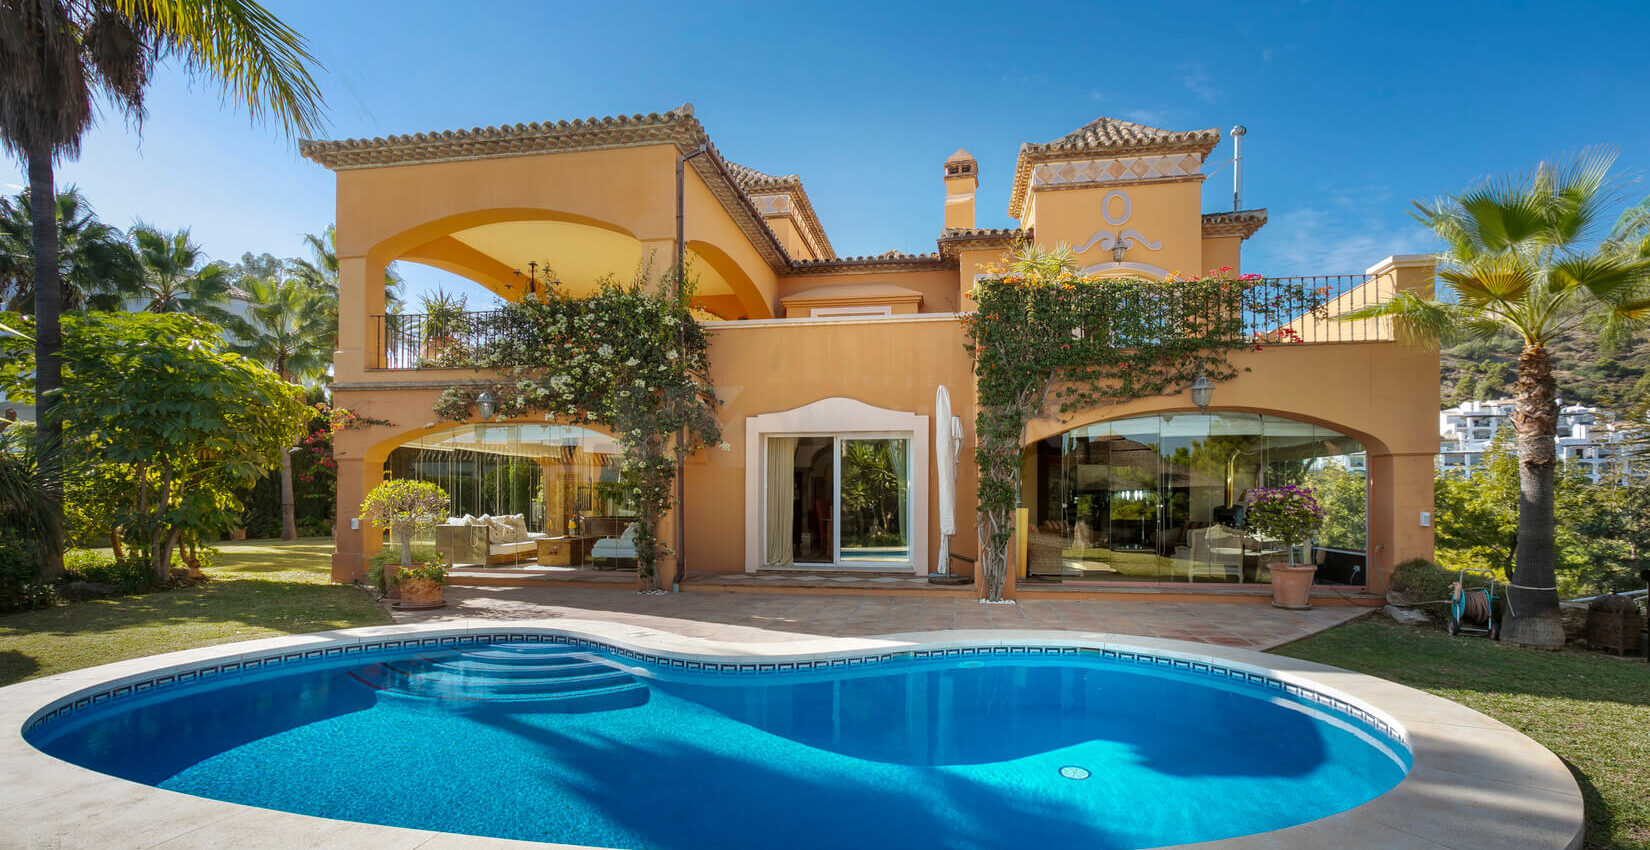 Mediterranean style villa in La Quinta